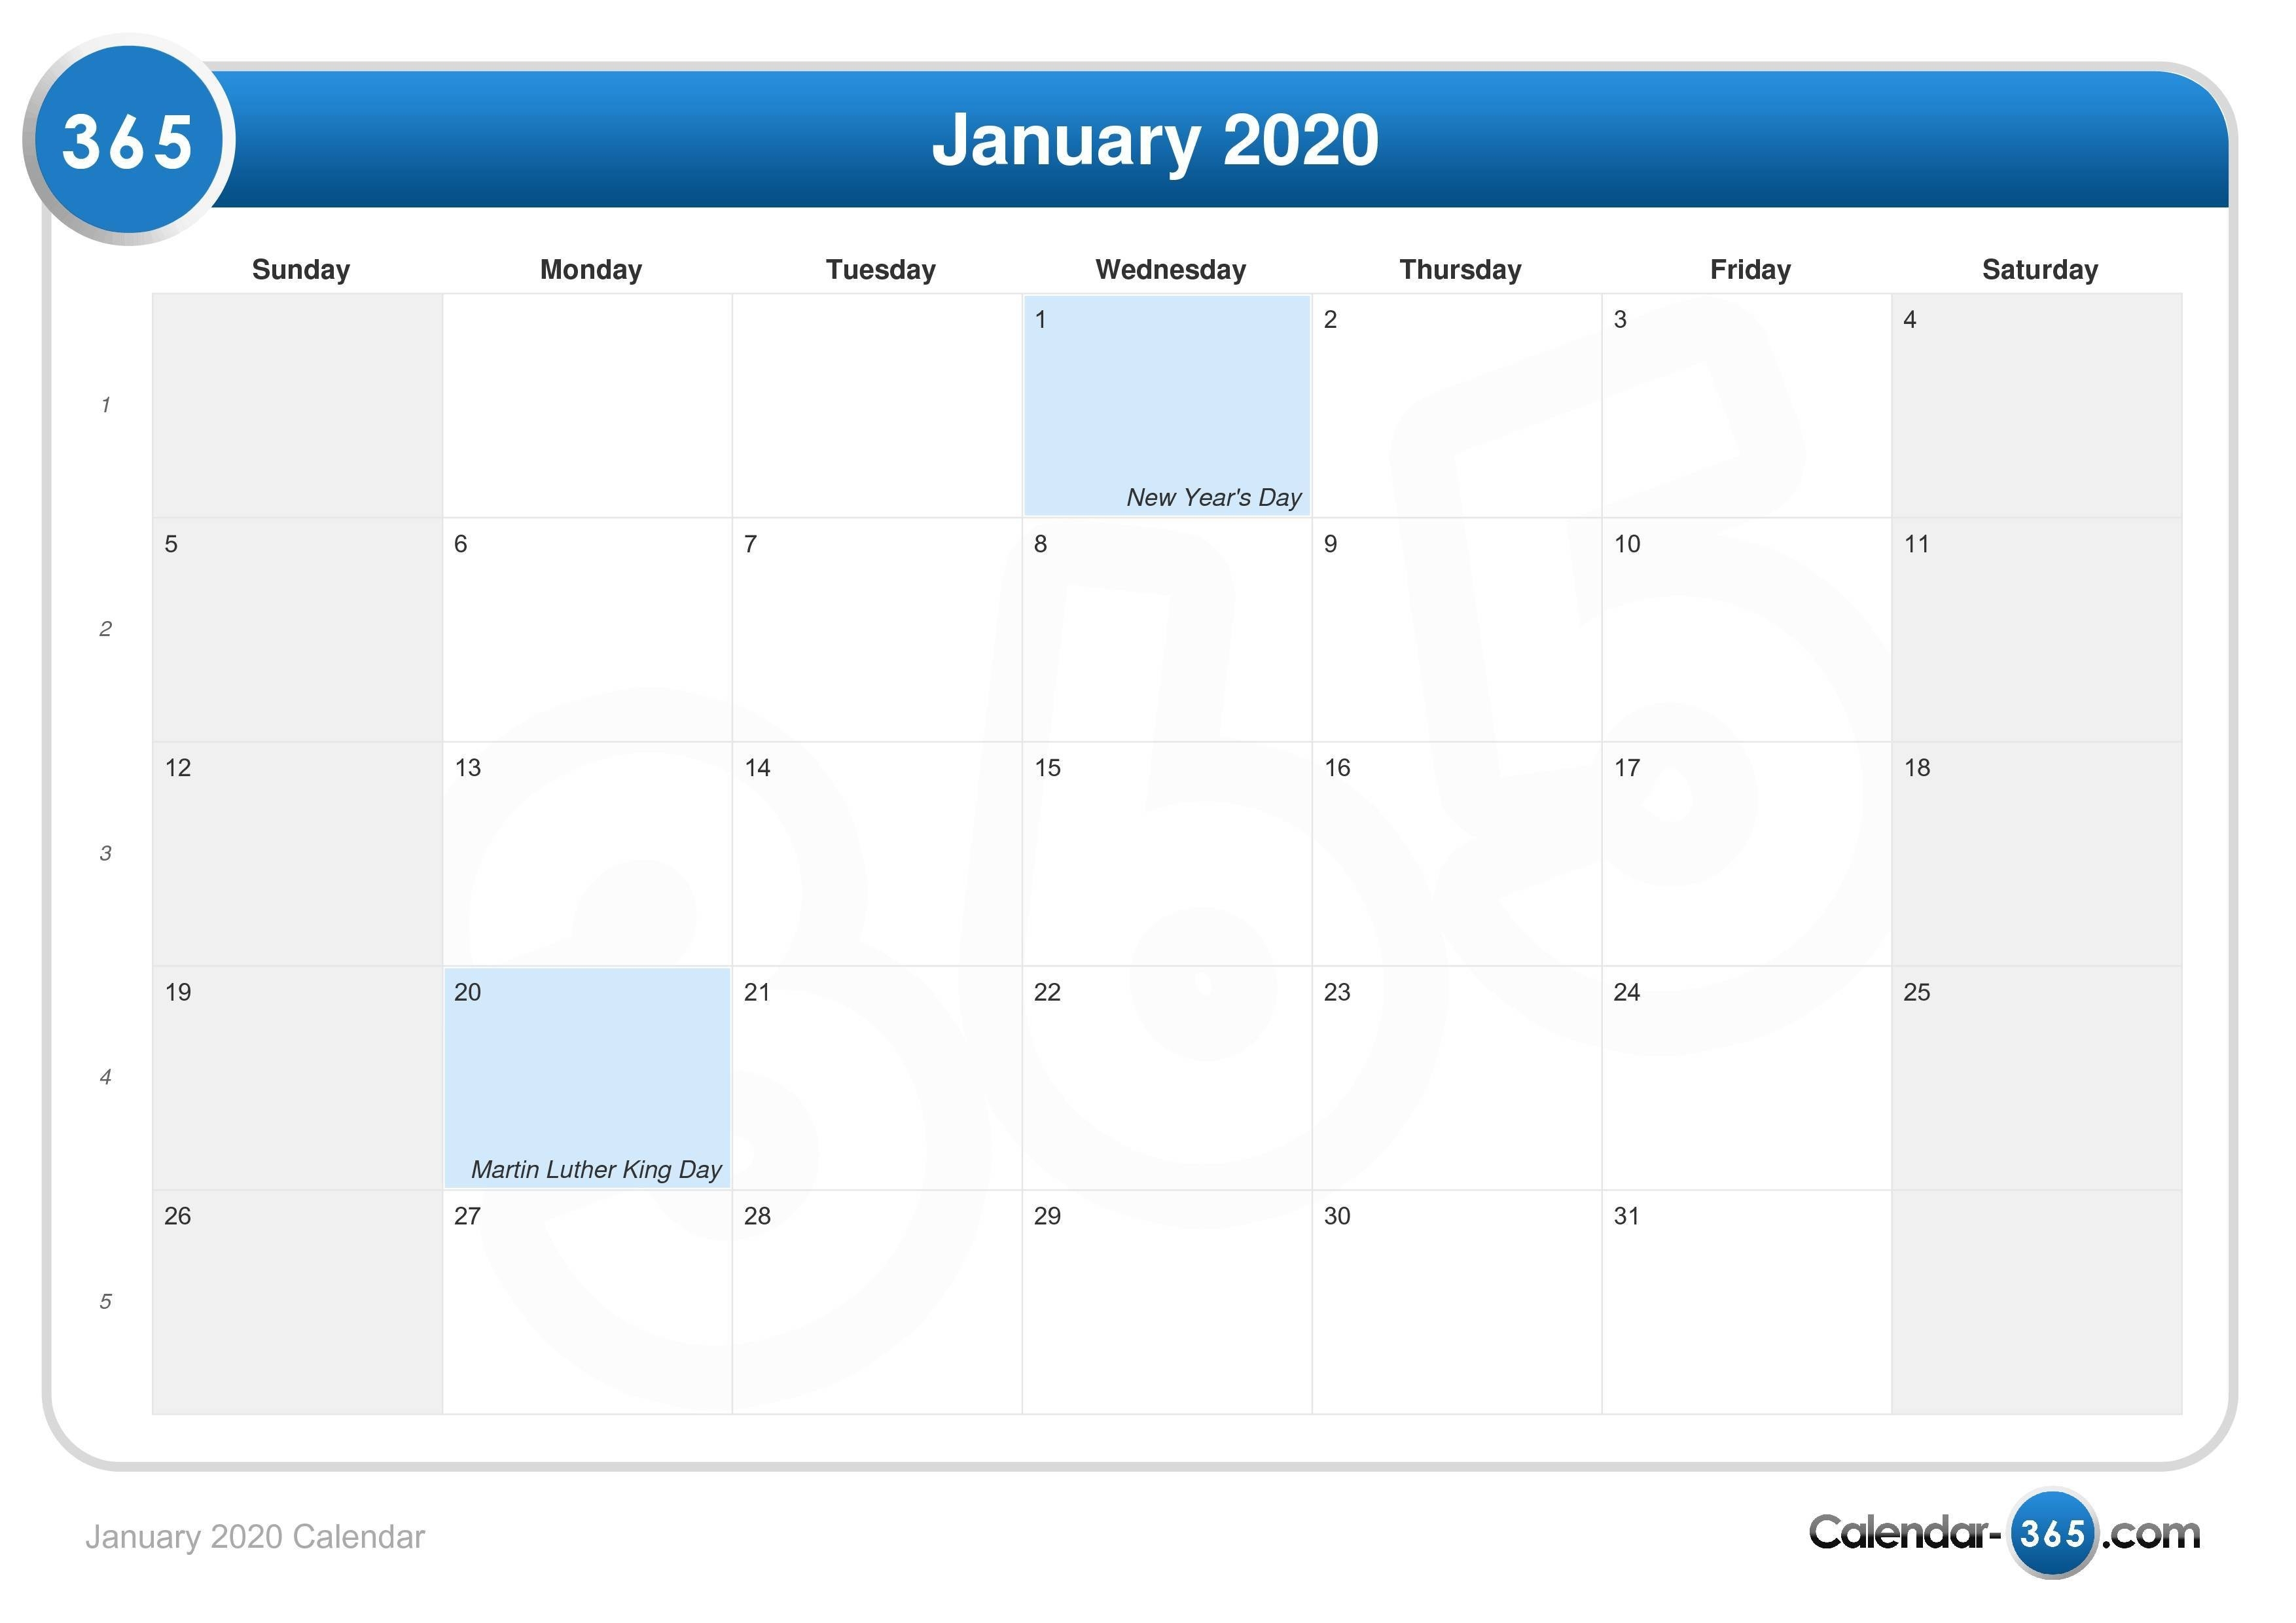 January 2020 Calendar-Las Vegas Calendar January 2020